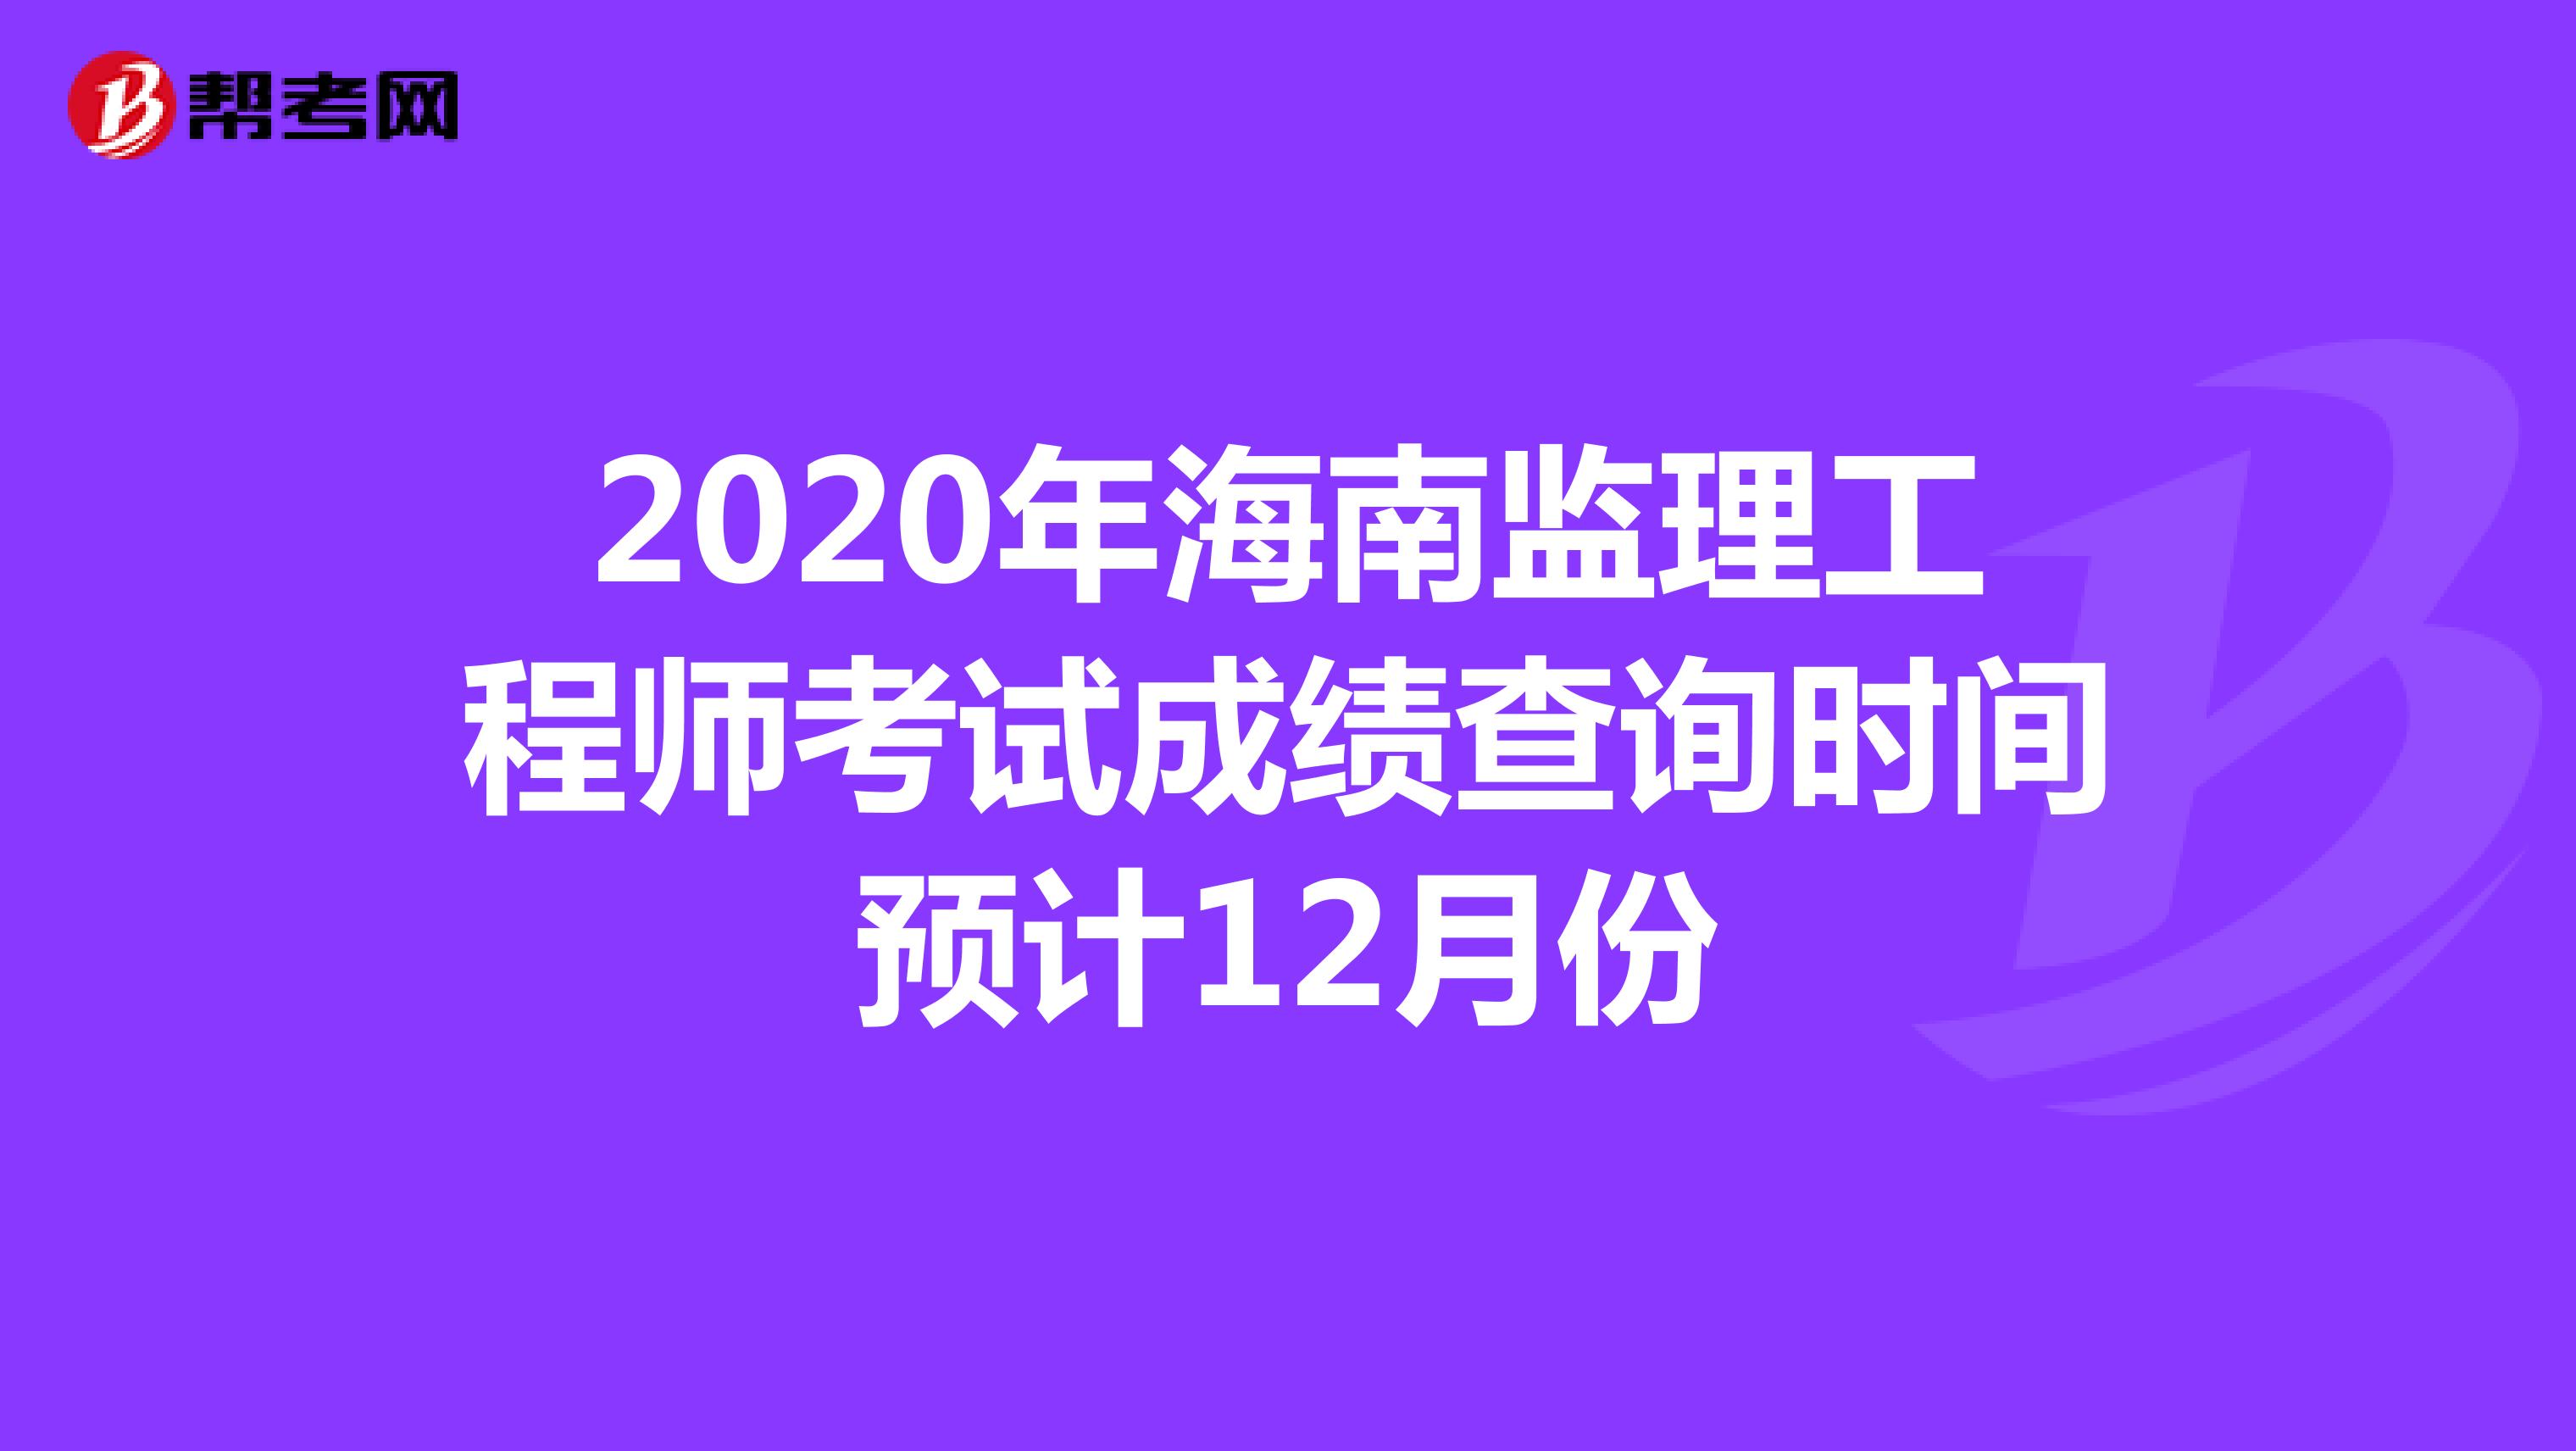 2020年海南监理工程师考试成绩查询时间预计12月份